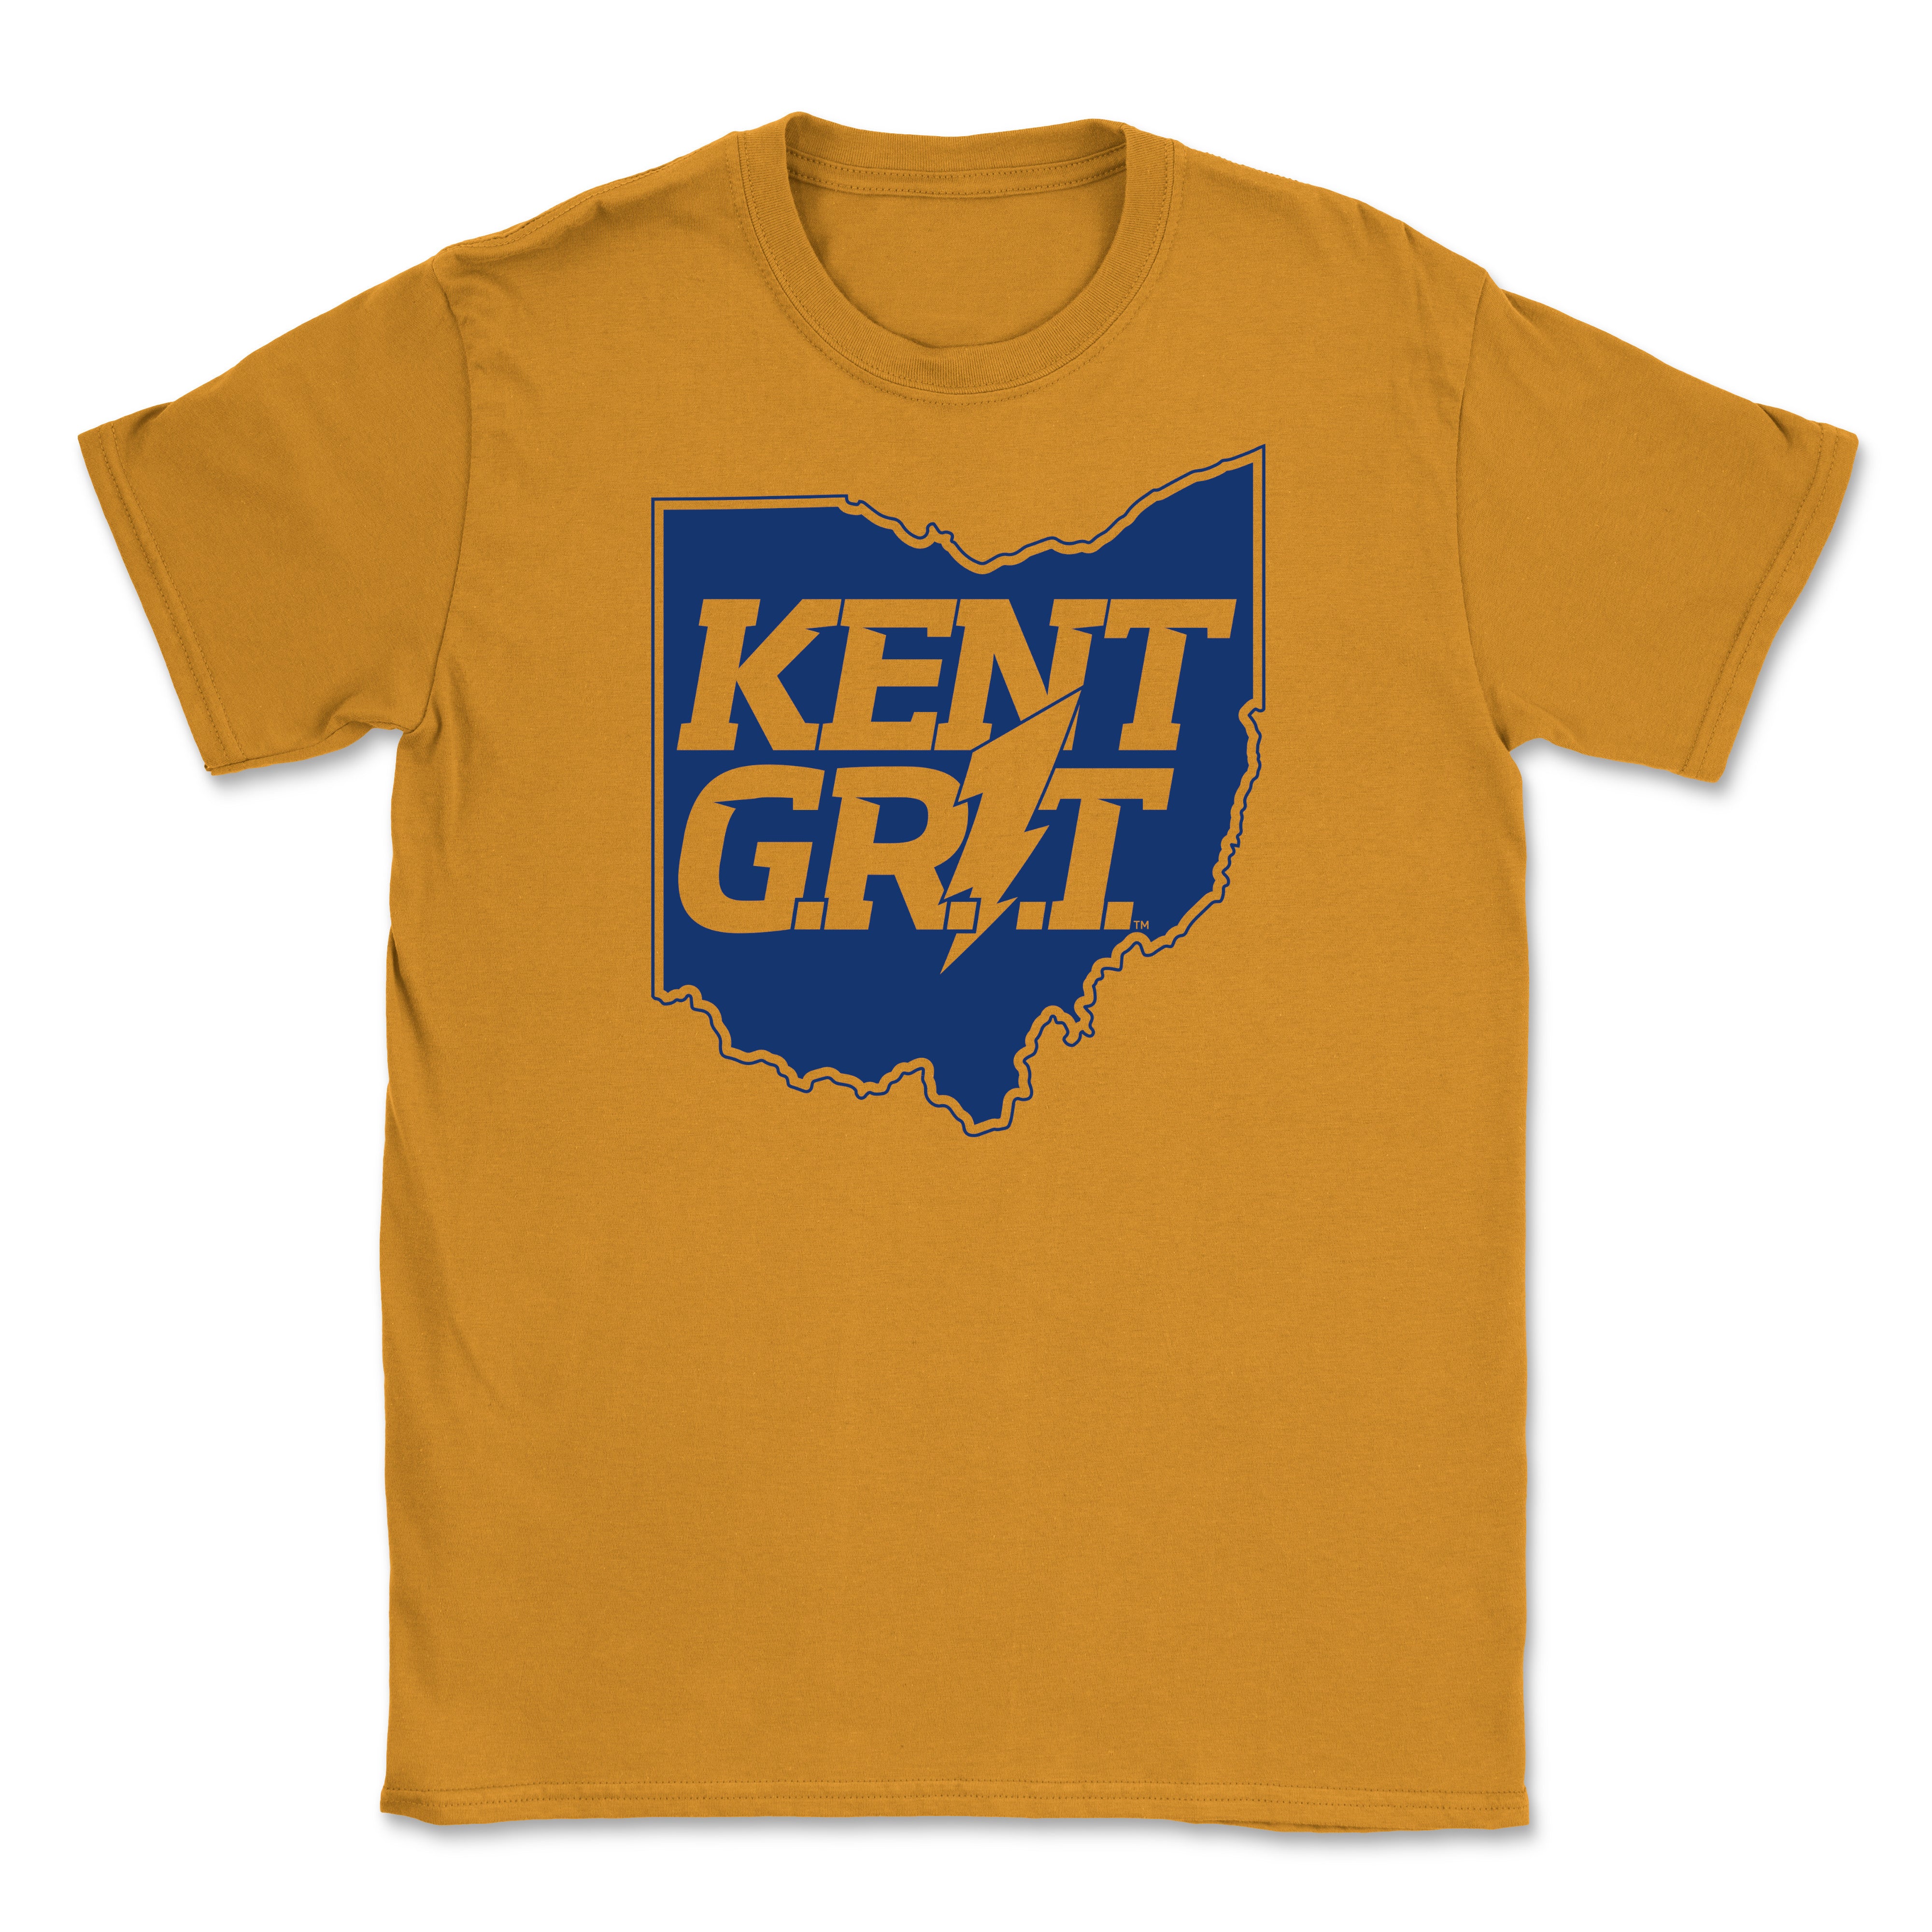 Kent Grit Short Sleeve T-Shirt